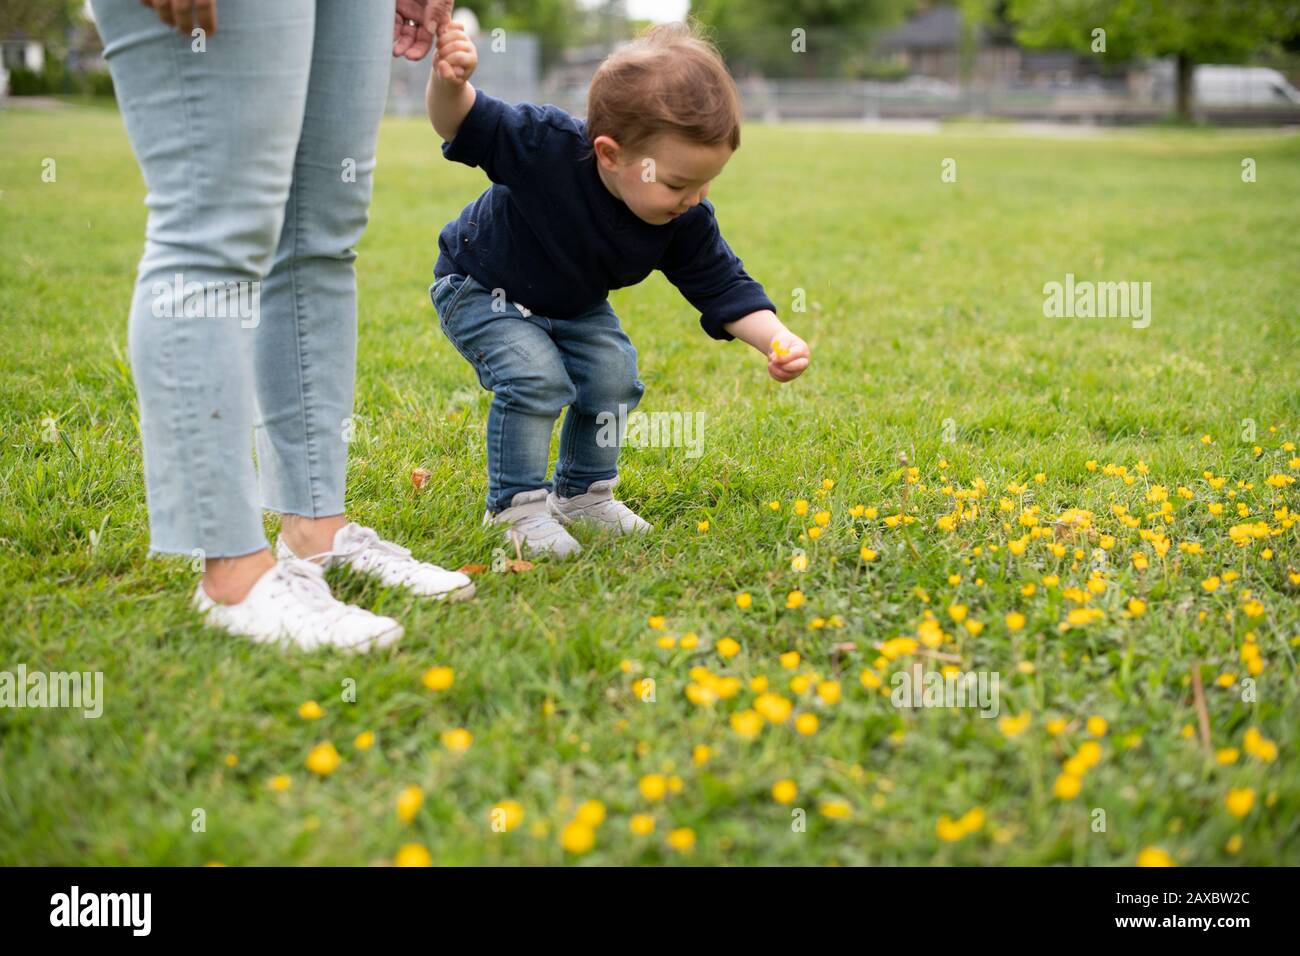 Süßes unschuldiges kleines Mädchen, das Blumen im Parkgras pflückt Stockfoto